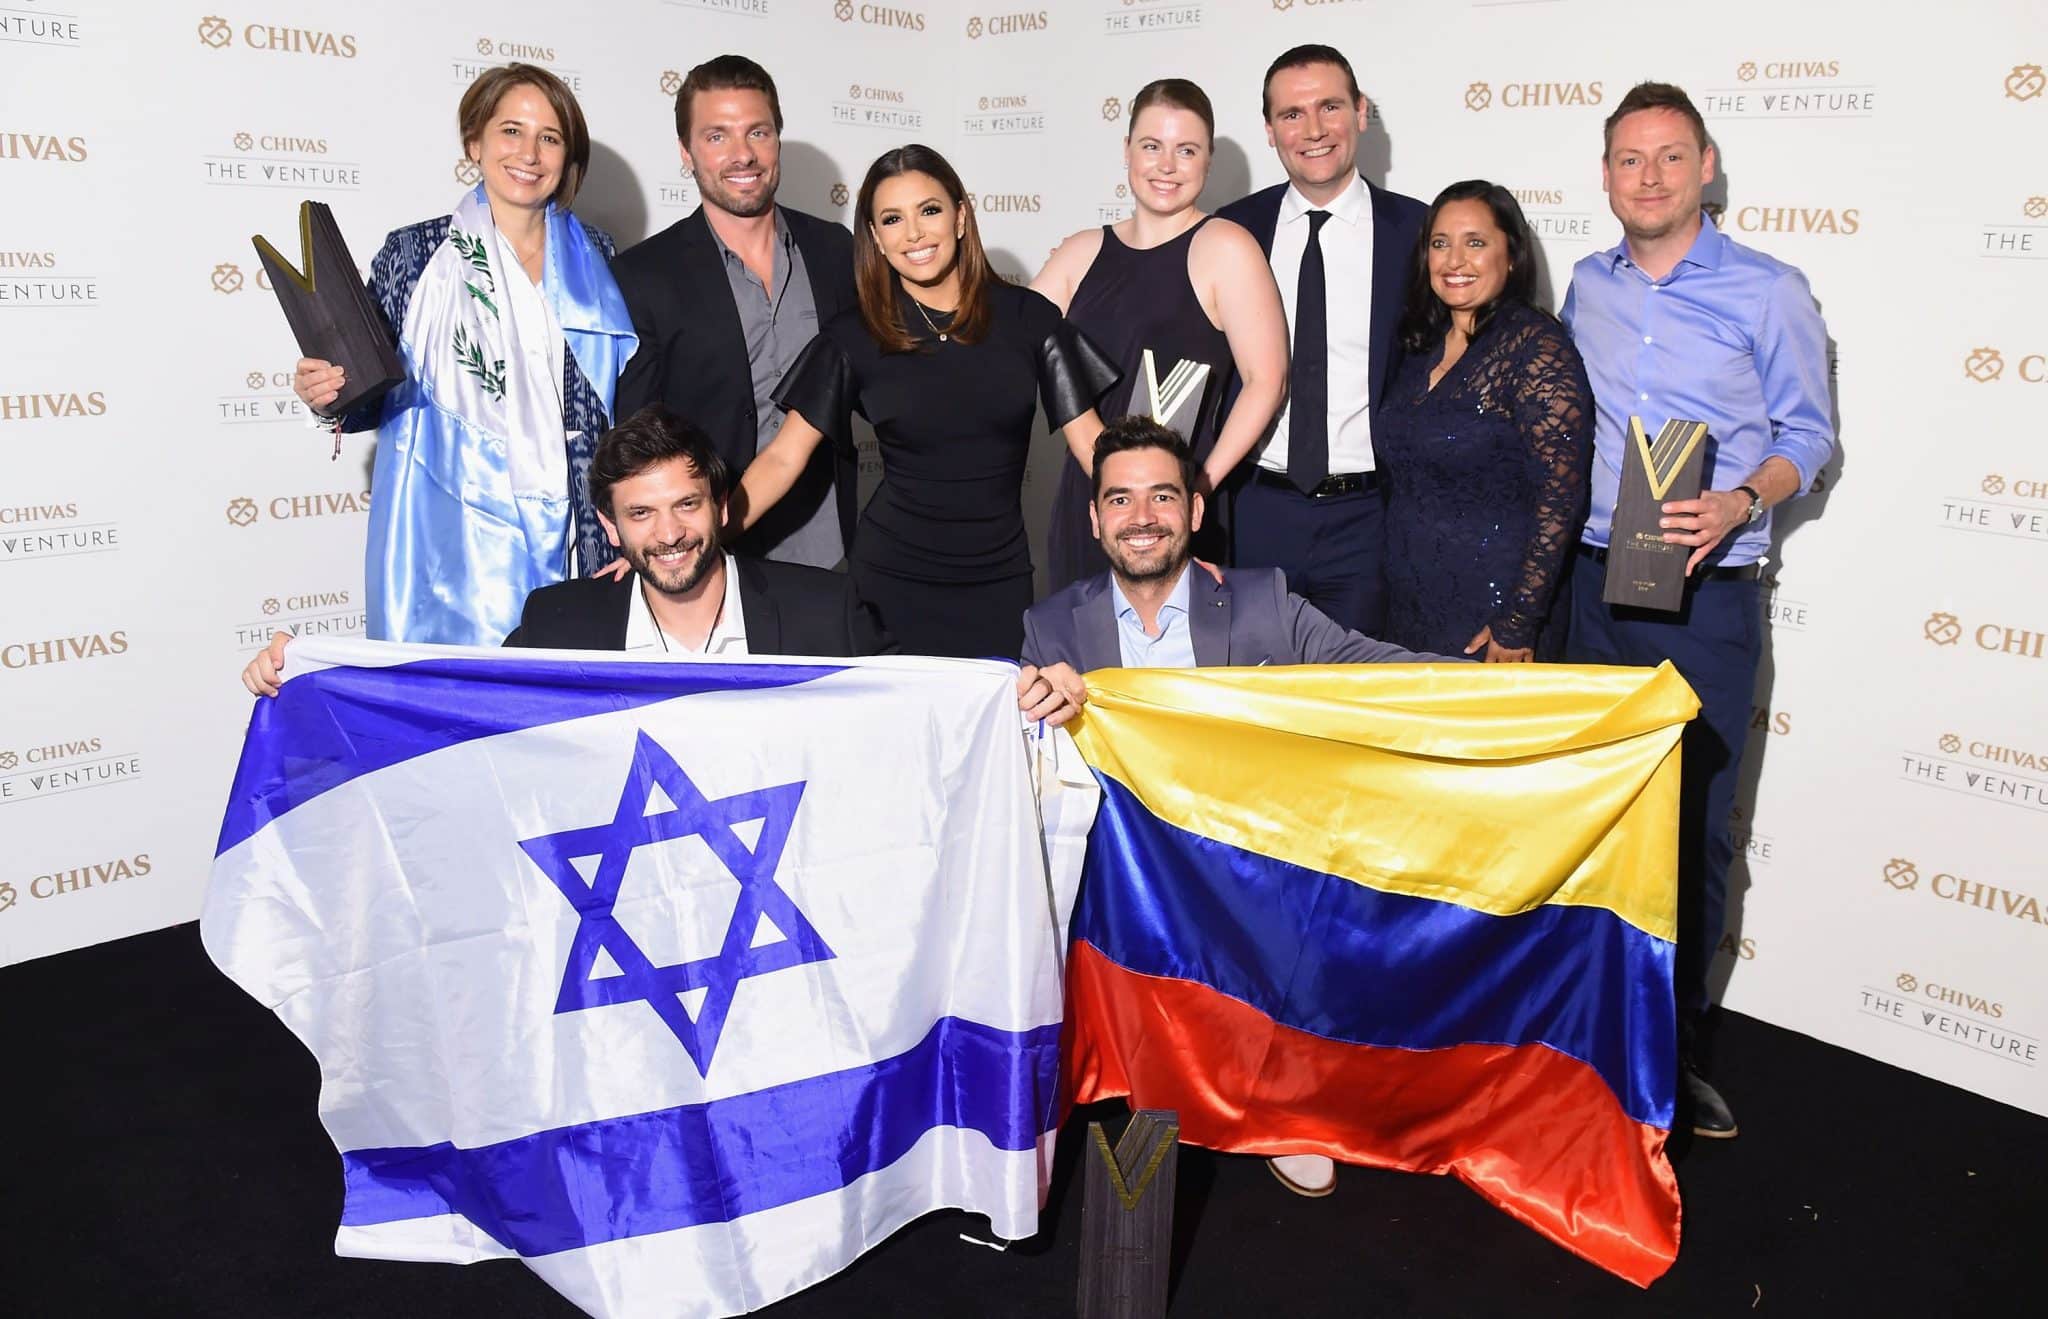 הסטארט-אפ EyeControl ייצג את ישראל בתחרות העולמית ב-2016 וזכה במקום השלישי ובפרס של 132,000 דולר לפיתוח המיזם. Photo by Michael Loccisano/Getty Images